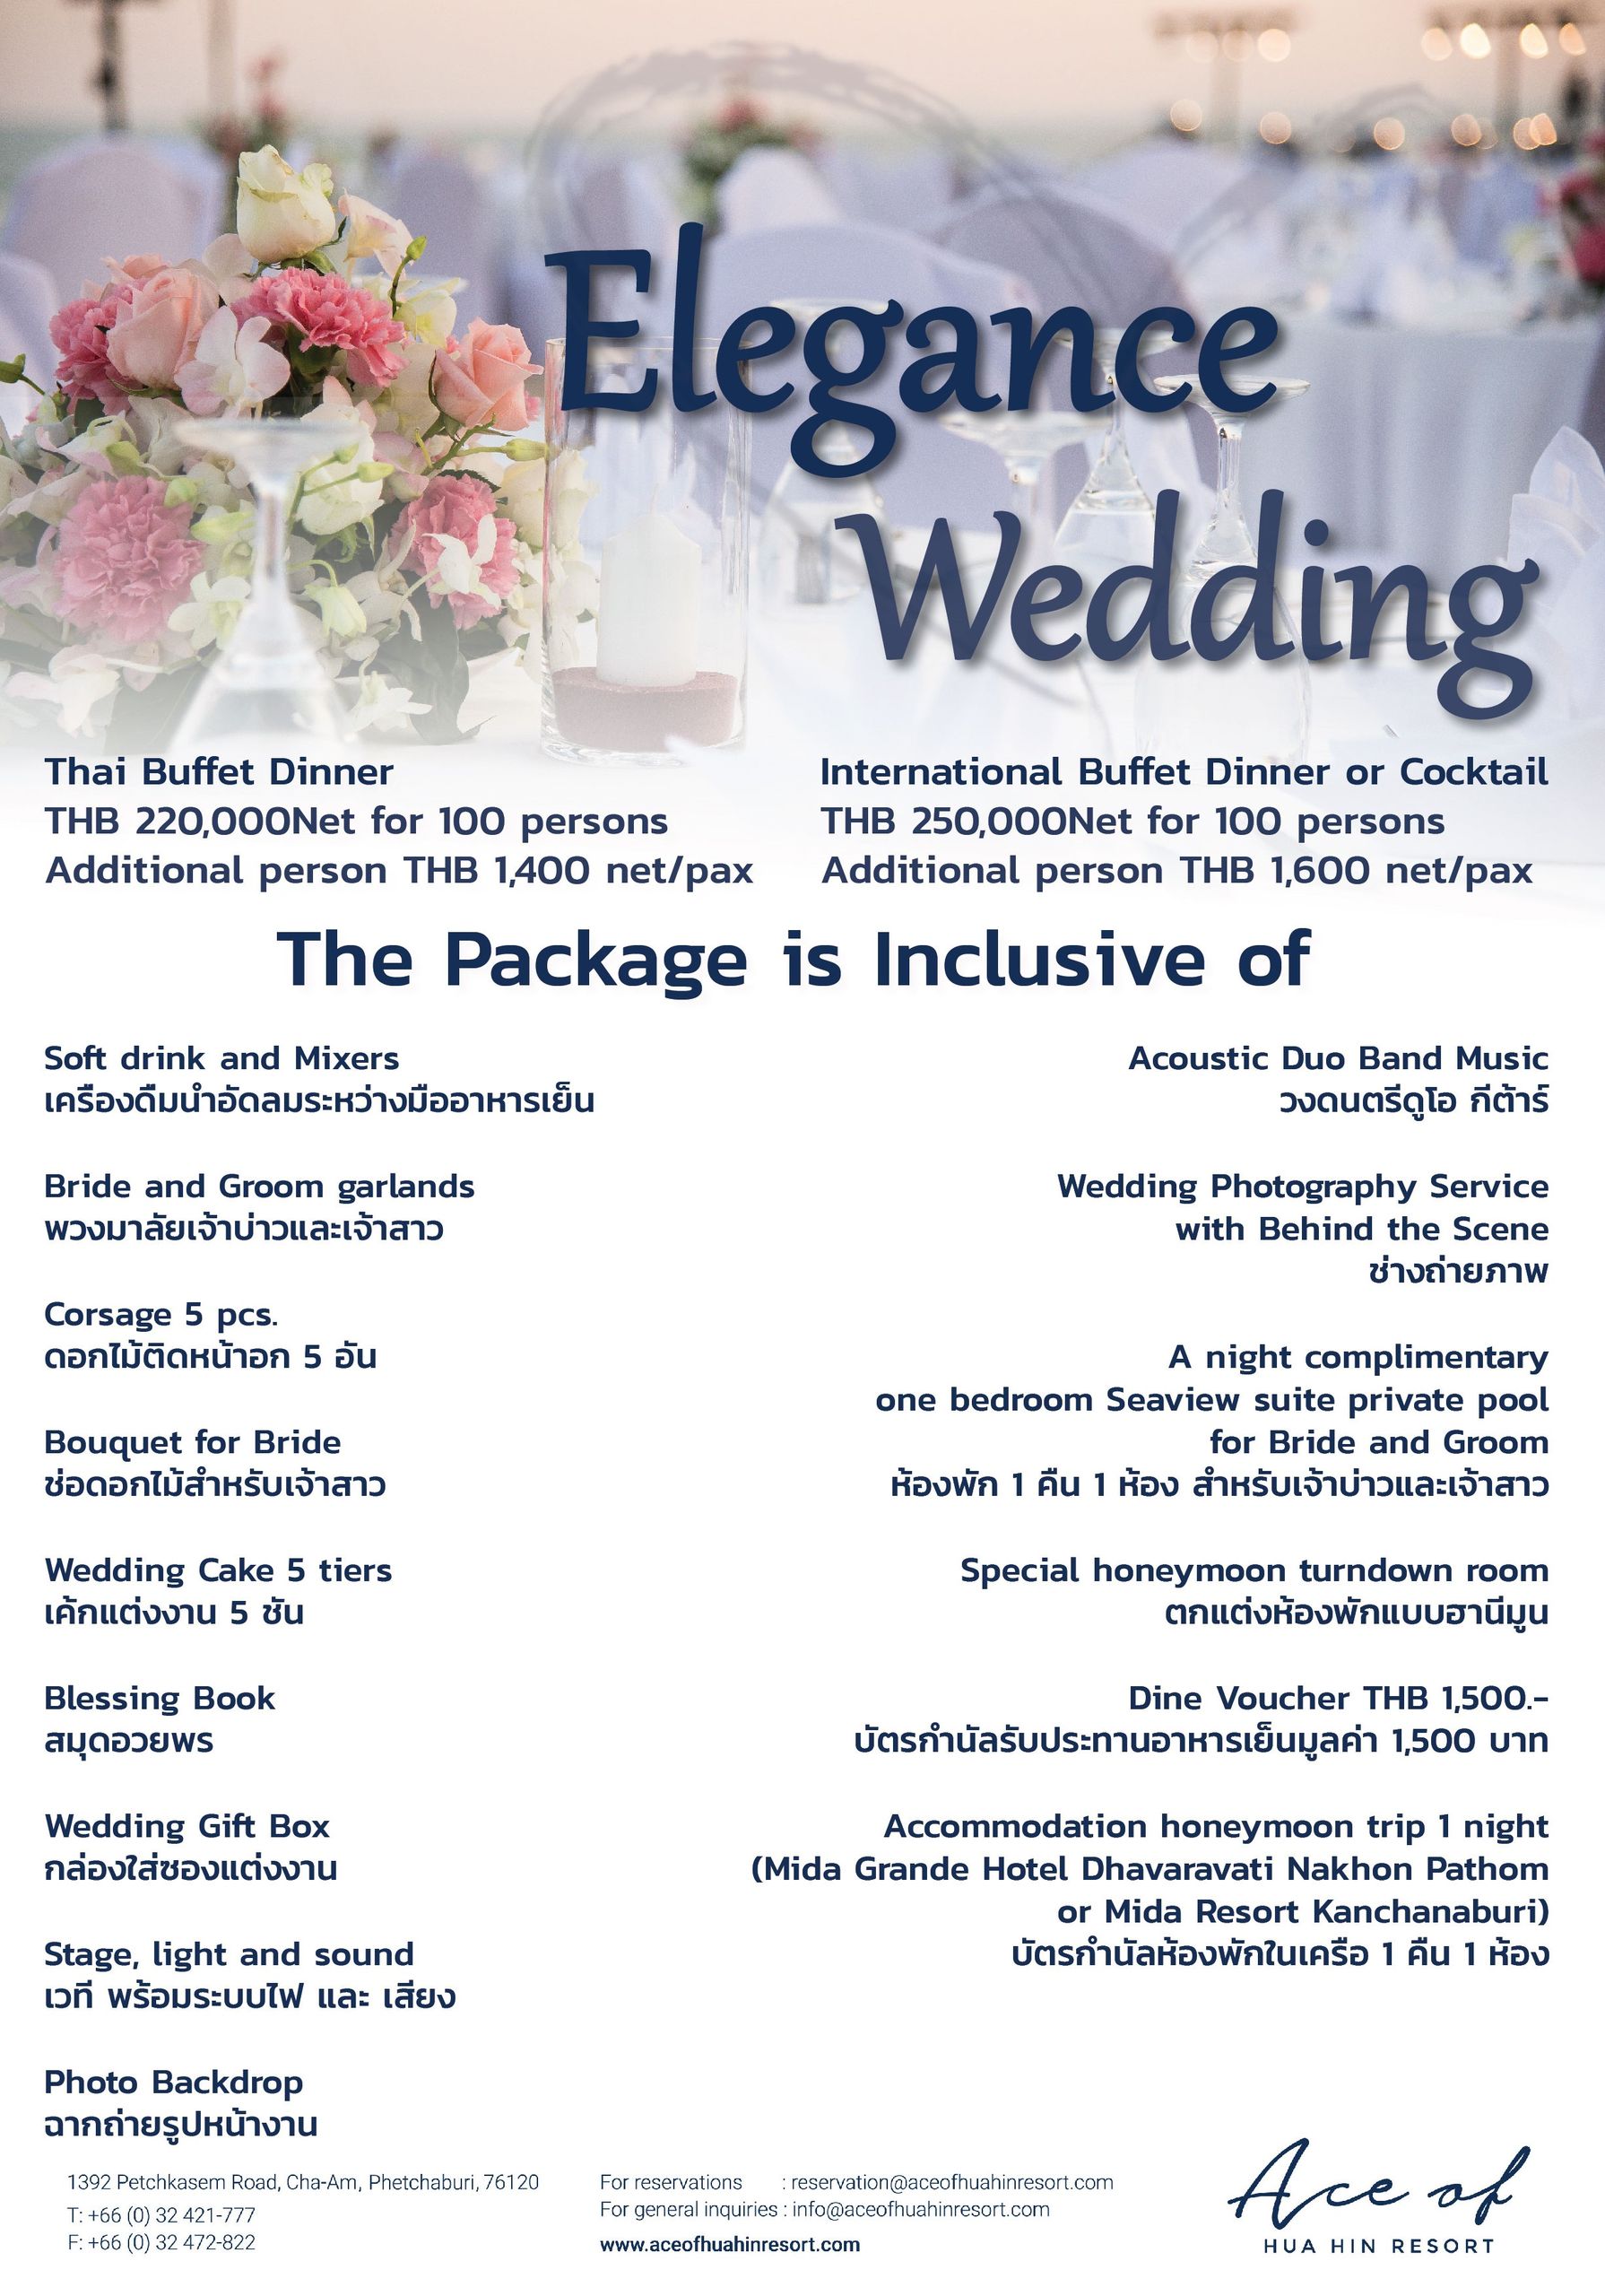 Elegance wedding package 2020